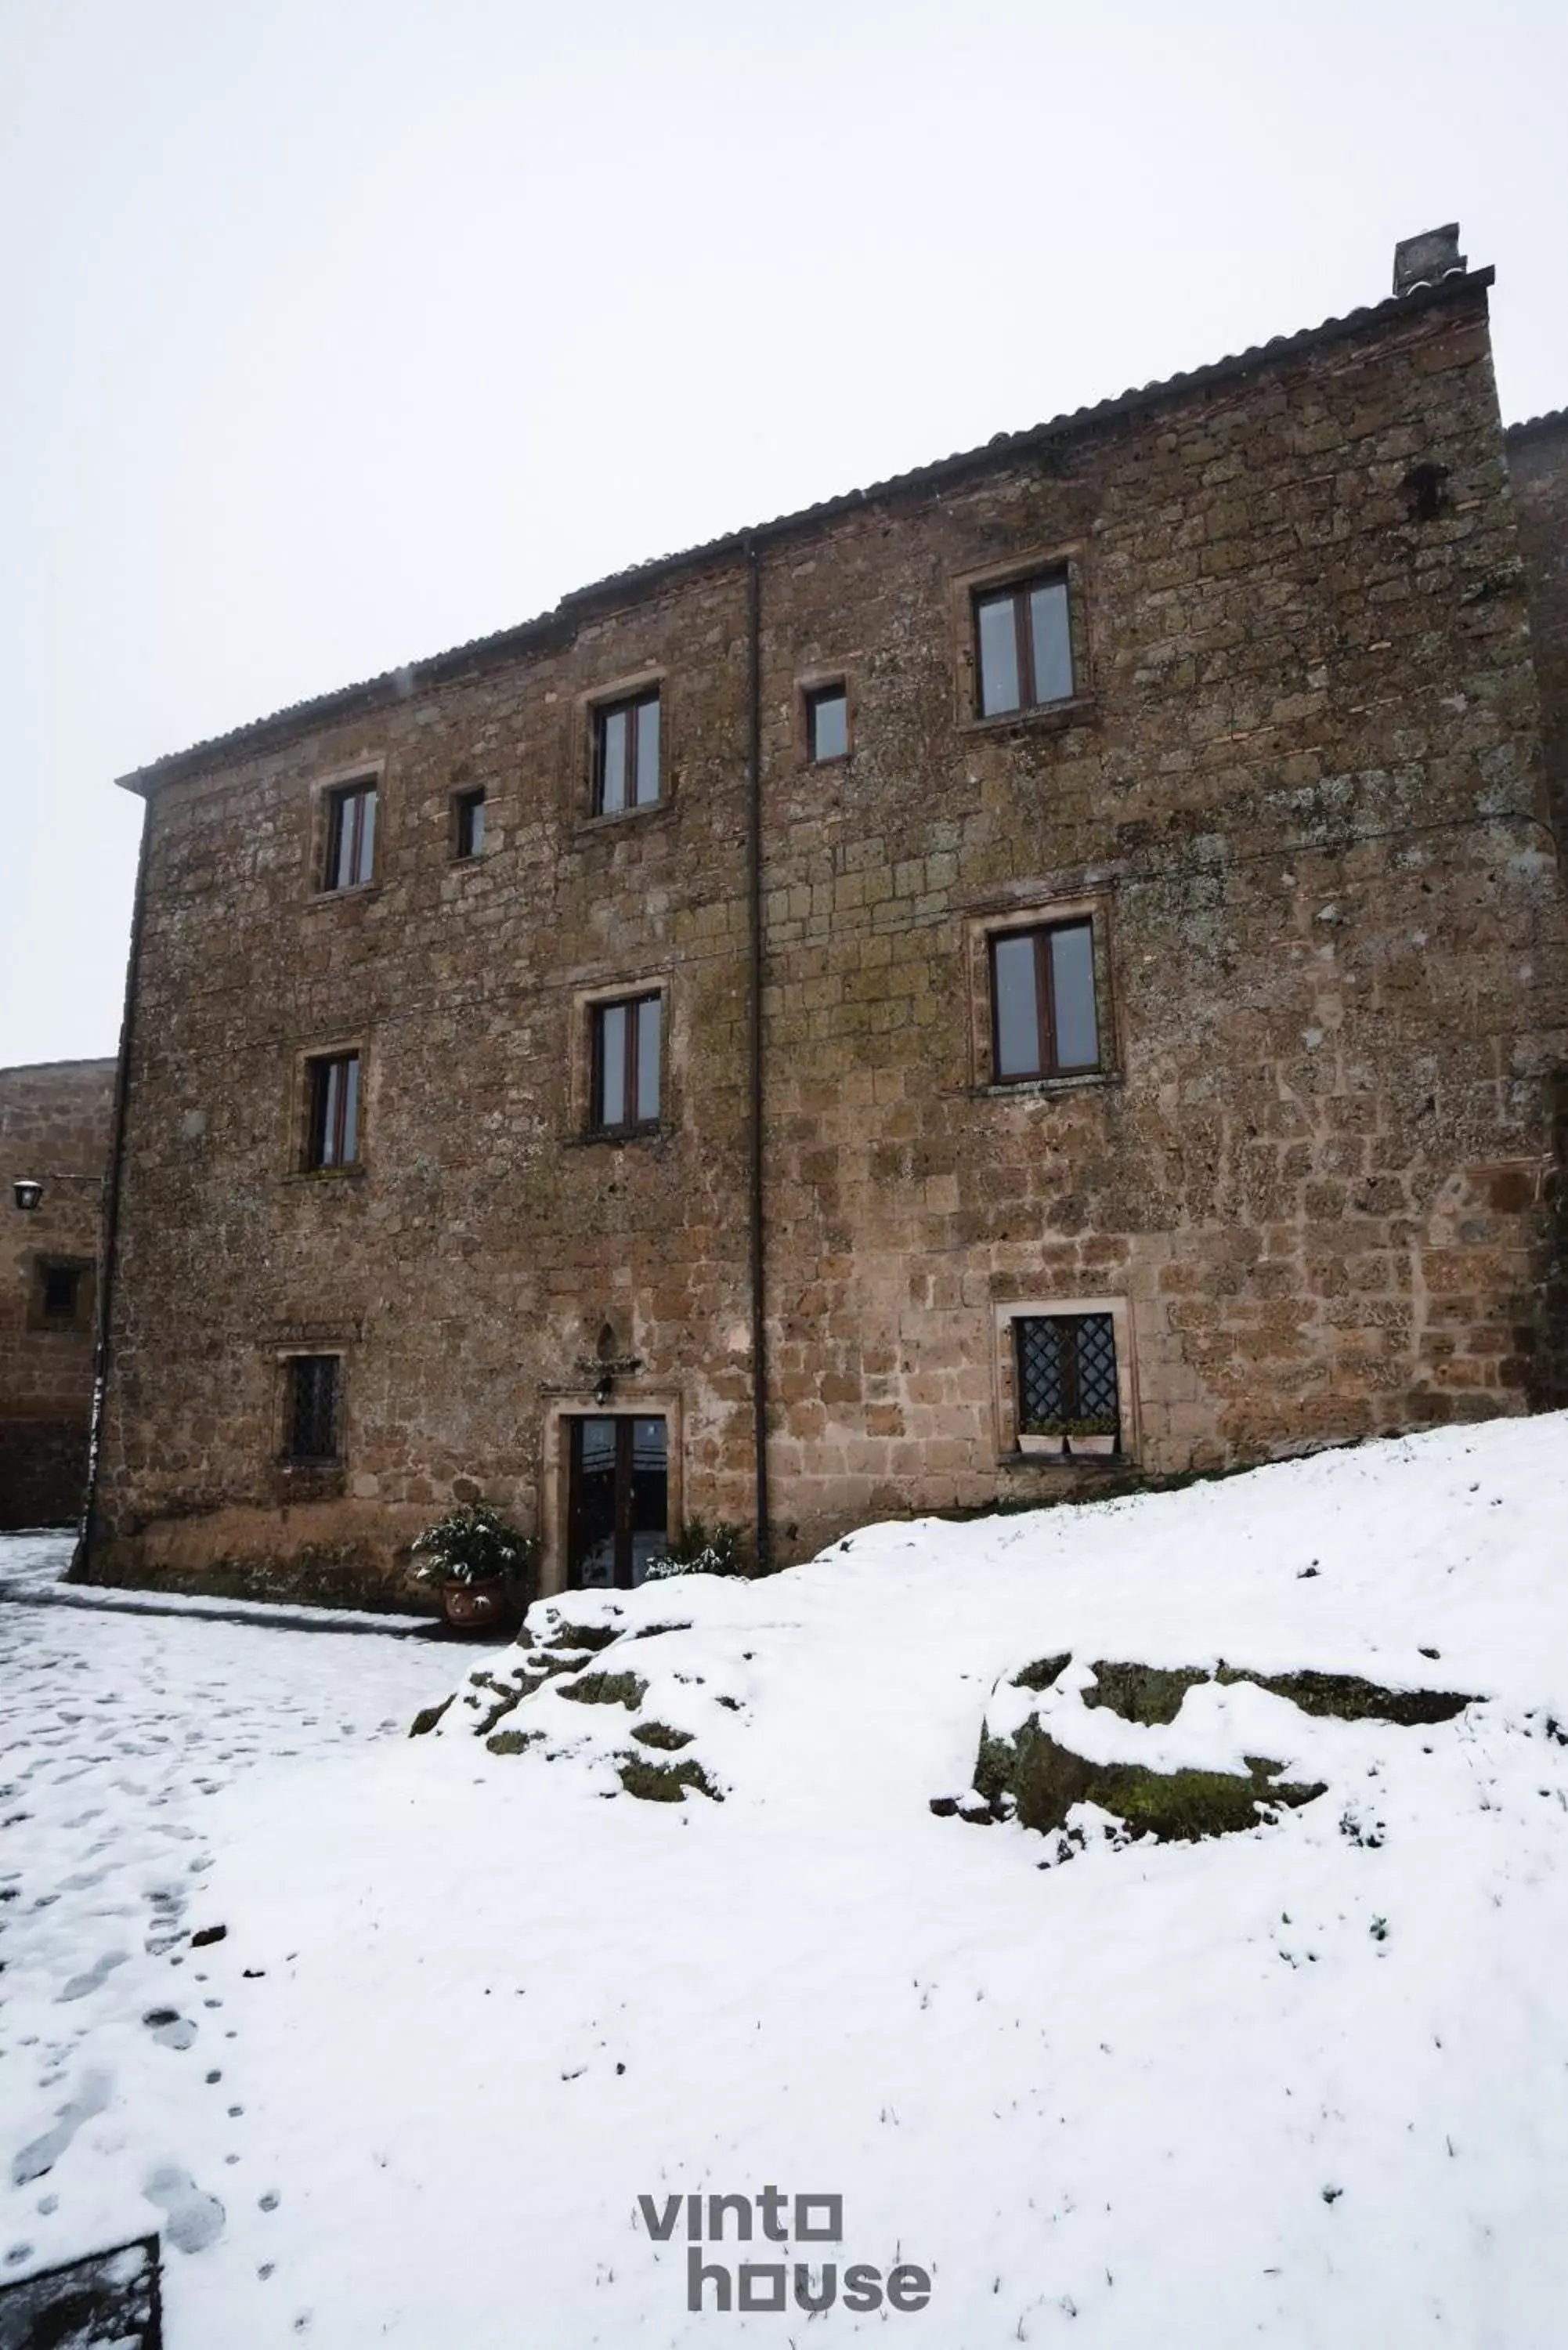 Winter in Vinto House Civita